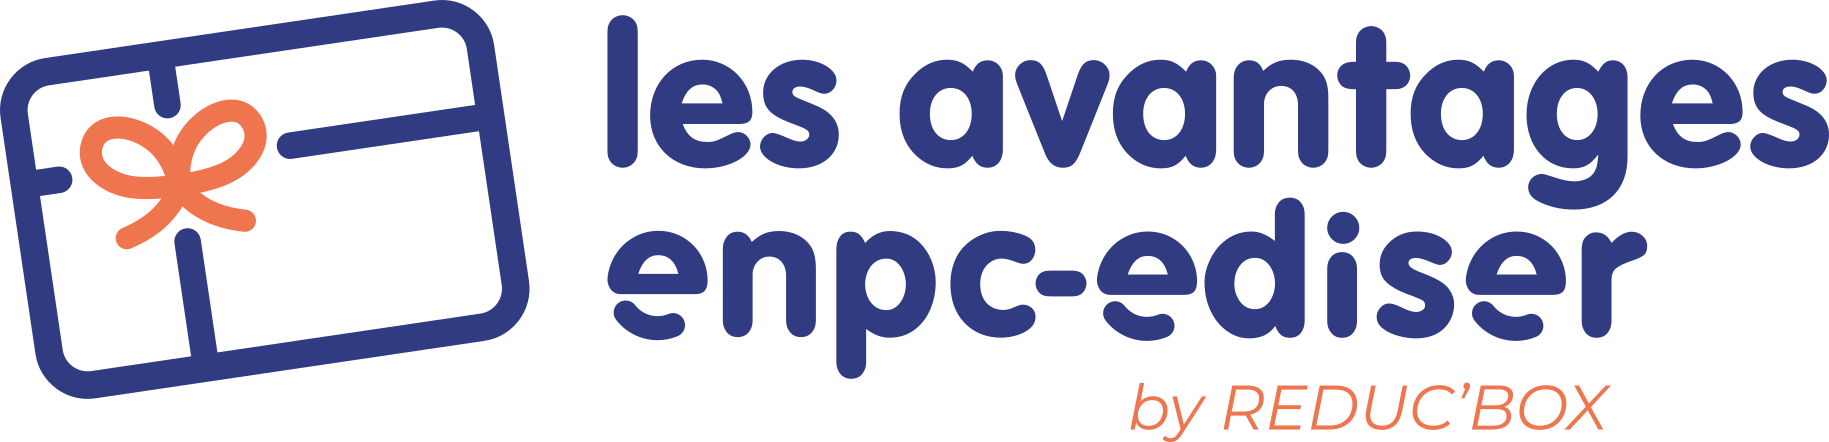 Les Avantages by Enpc-Ediser